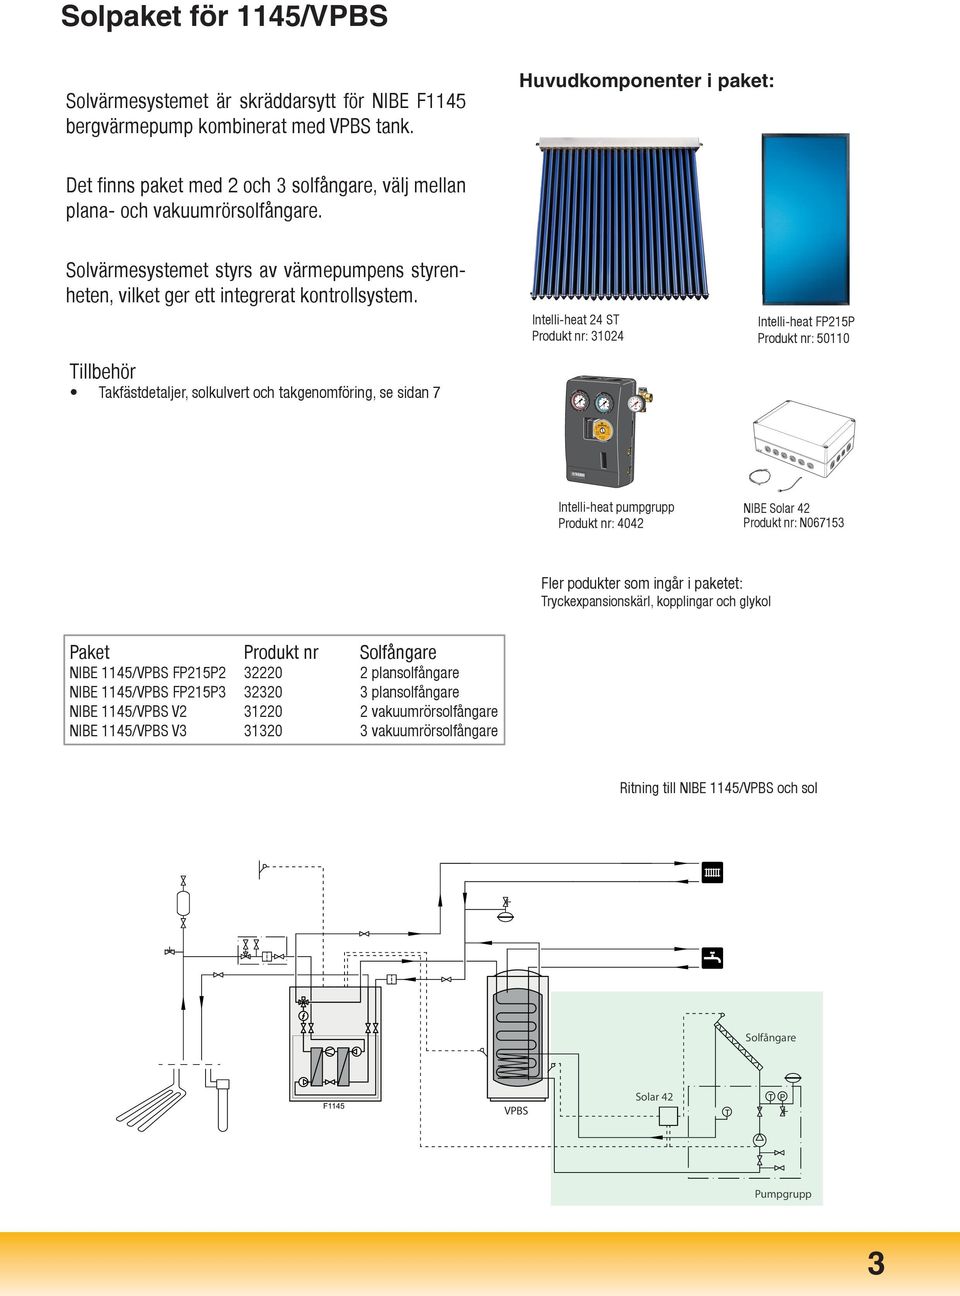 Solvärmesystemet styrs av värmepumpens styrenheten, vilket ger ett integrerat kontrollsystem.